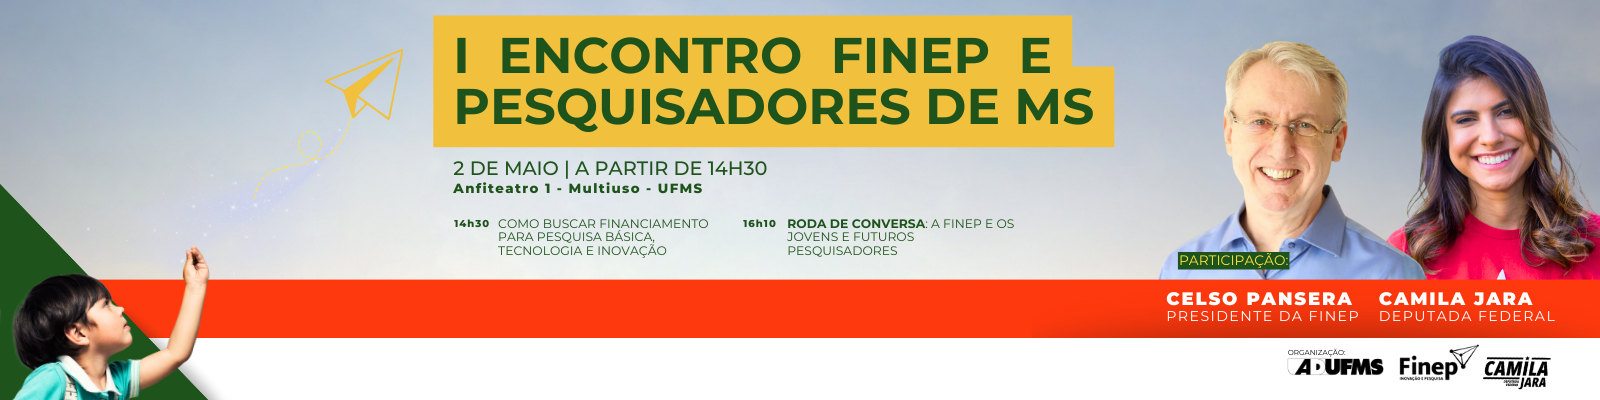 I Encontro Finep e Pesquisadores de Mato Grosso do Sul promove diálogo entre Ciência, Tecnologia e Inovação 